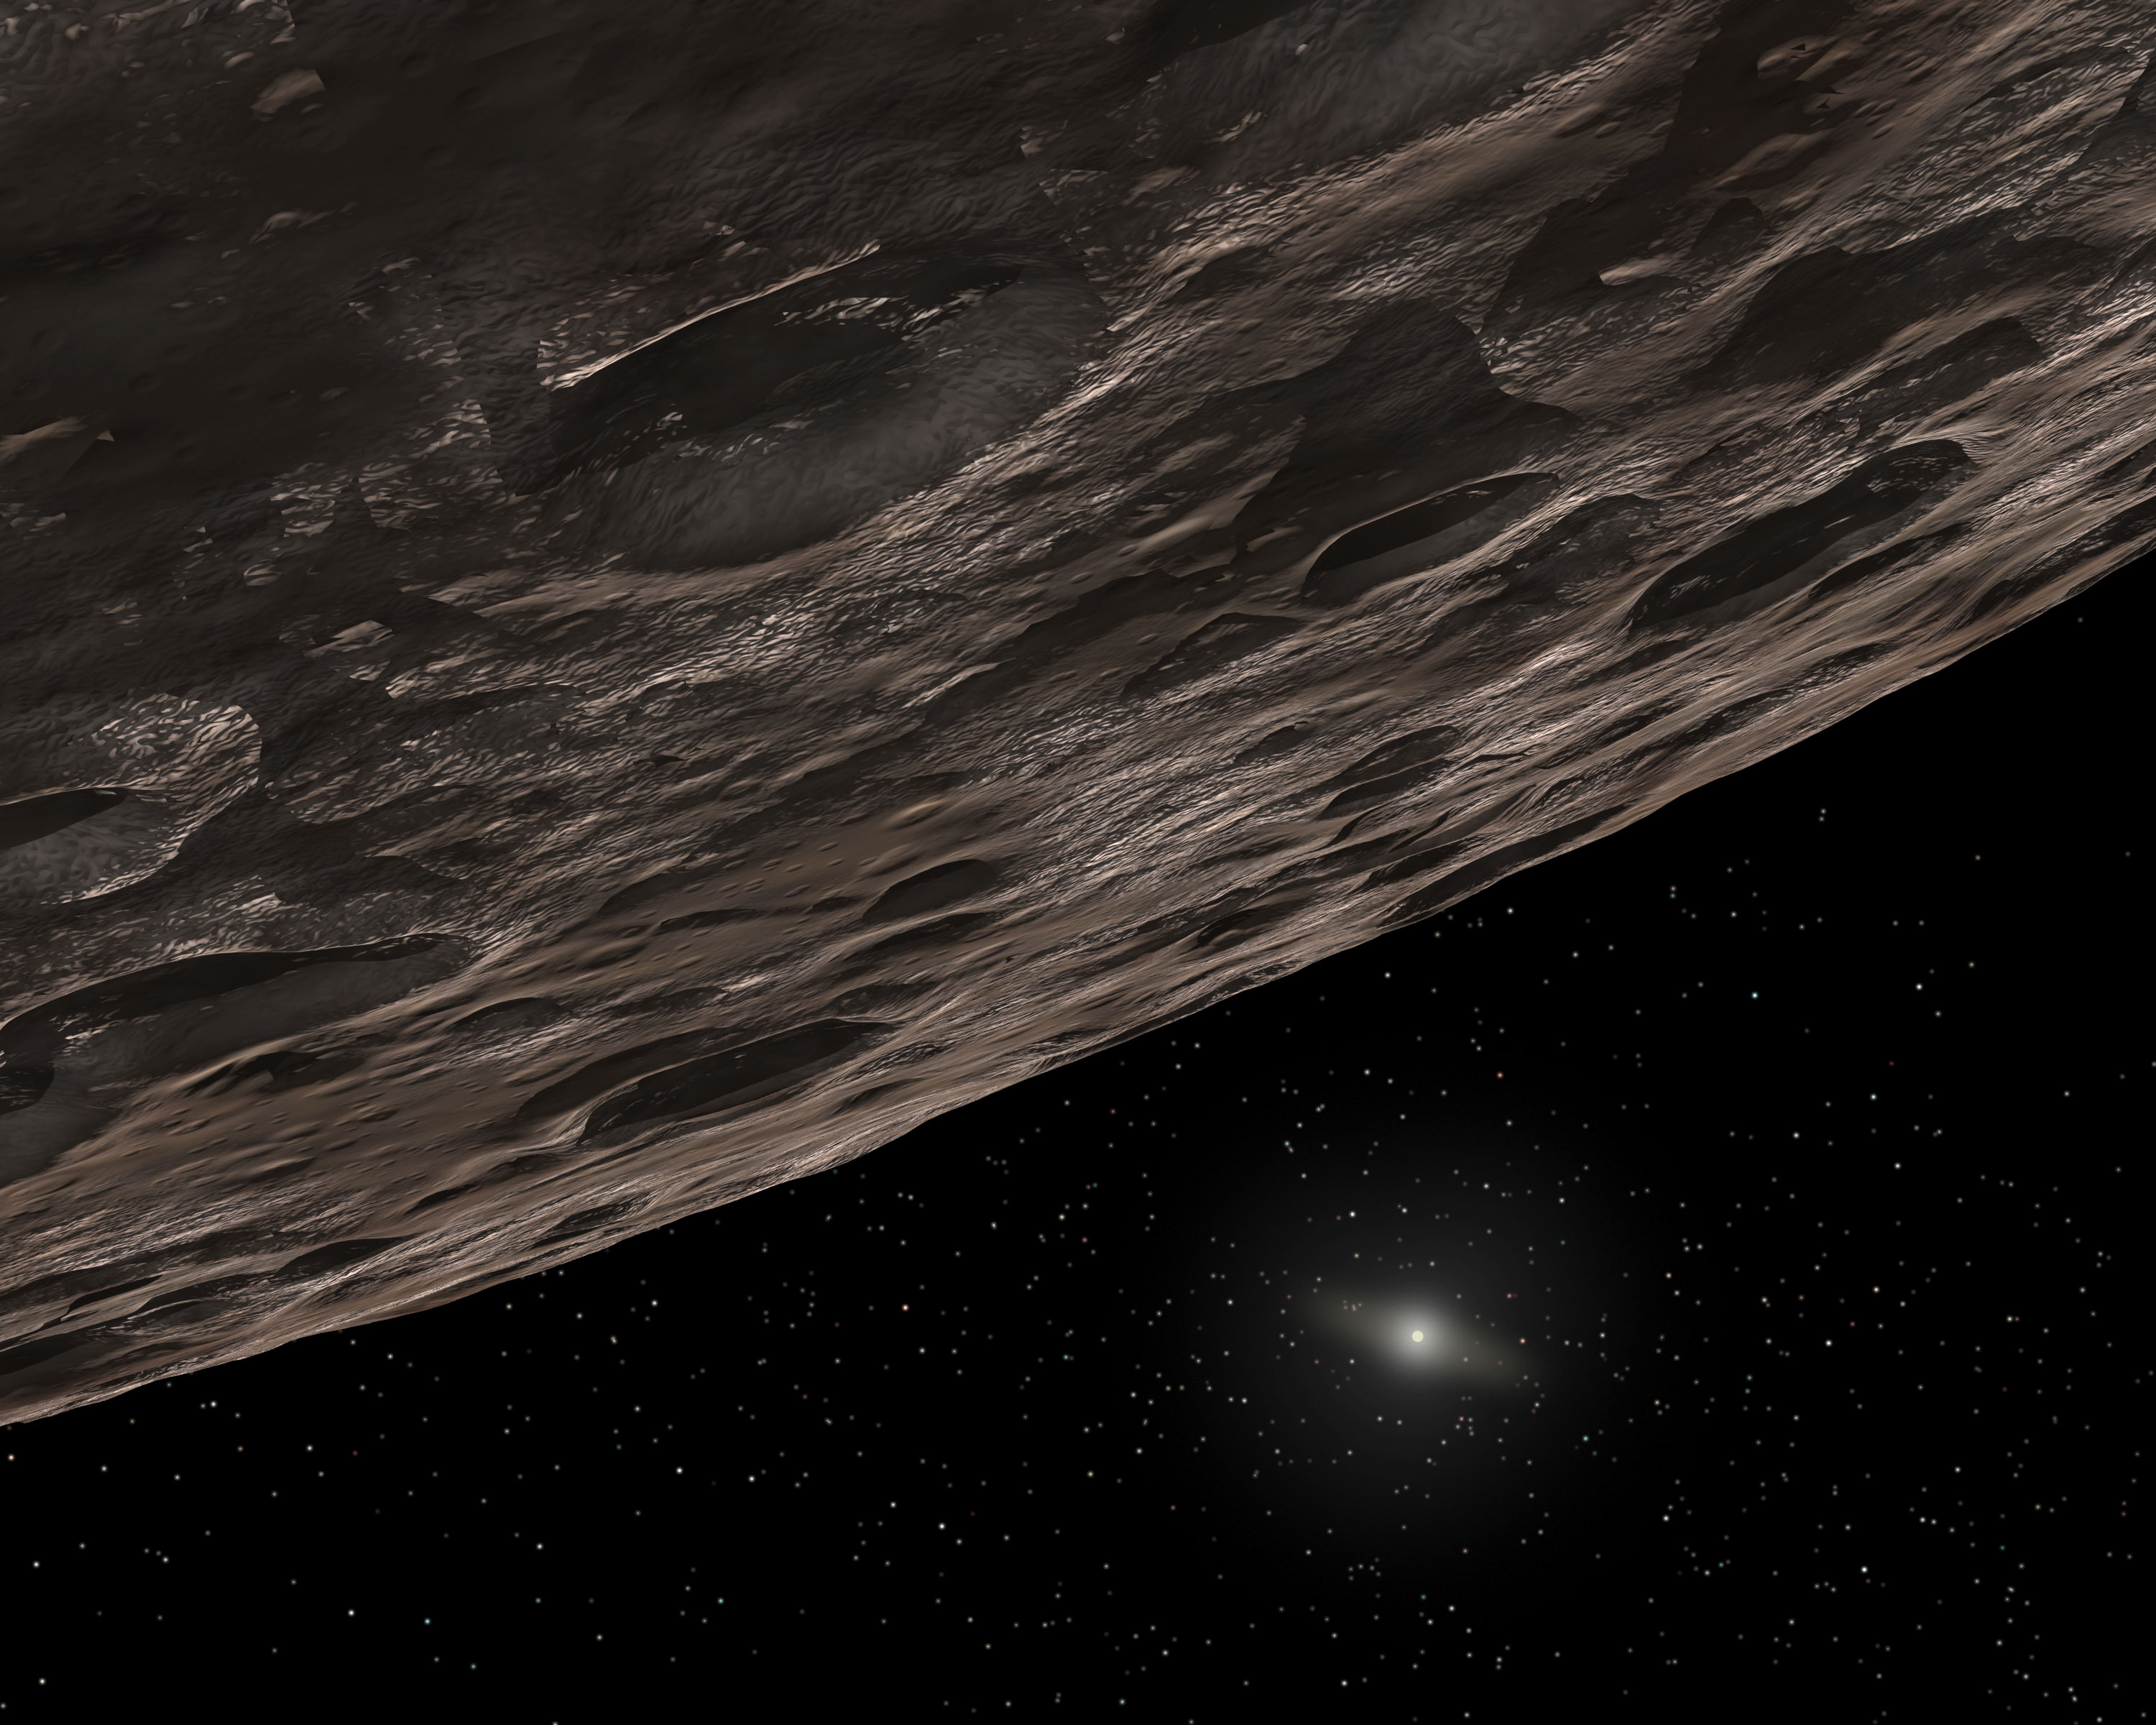 2014 UZ224, une nouvelle planète naine identifiée dans le Système solaire ? 492615main_kuiperbeltobject